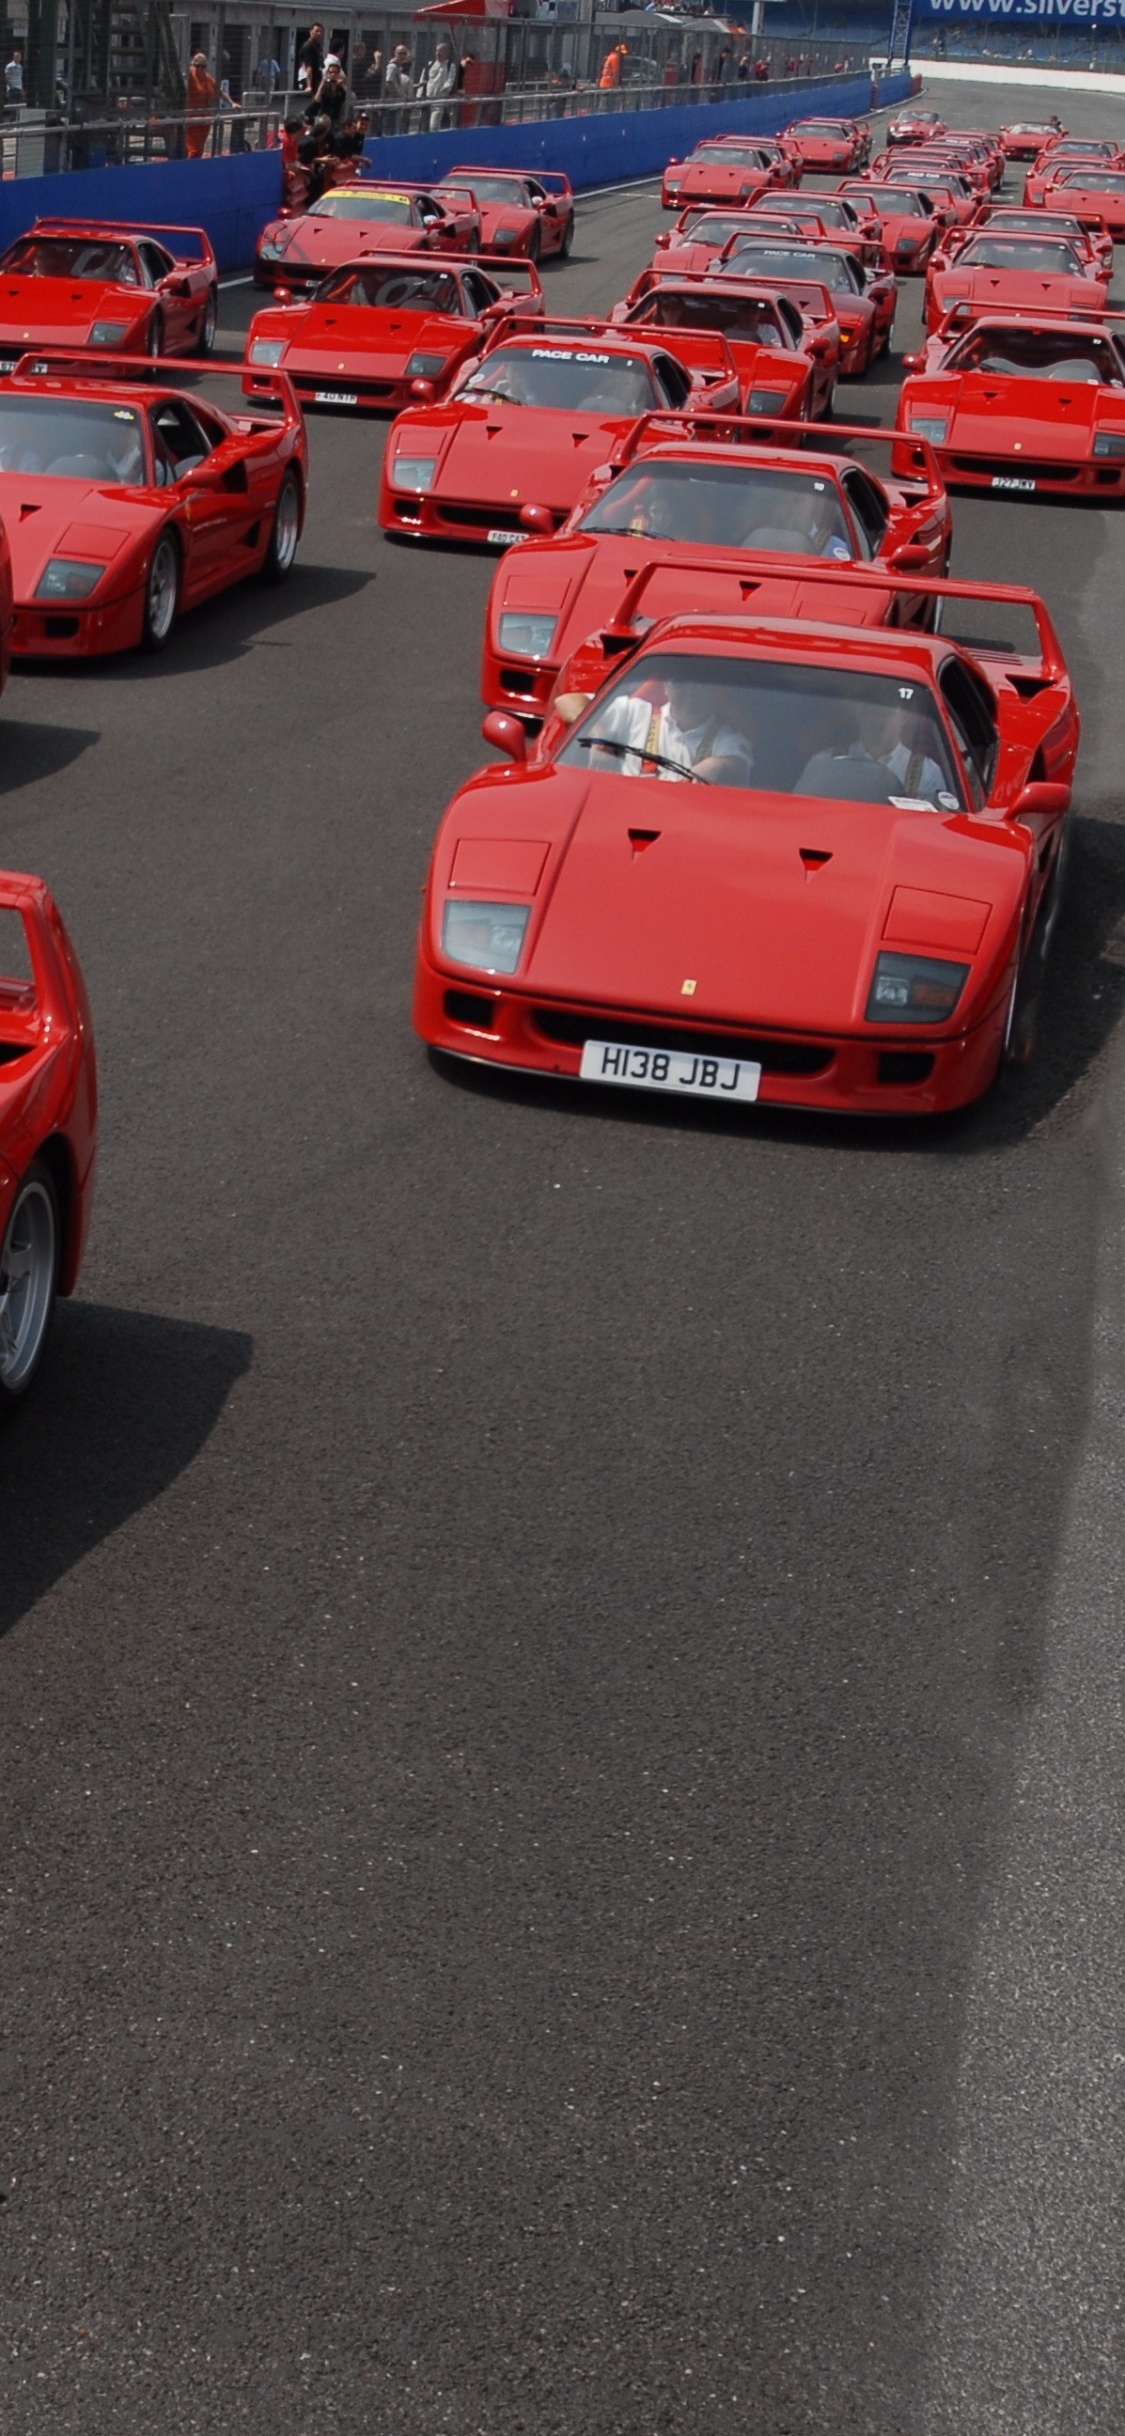 Voiture de Sport Ferrari Rouge Garée Sur un Parking Pendant la Journée. Wallpaper in 1125x2436 Resolution